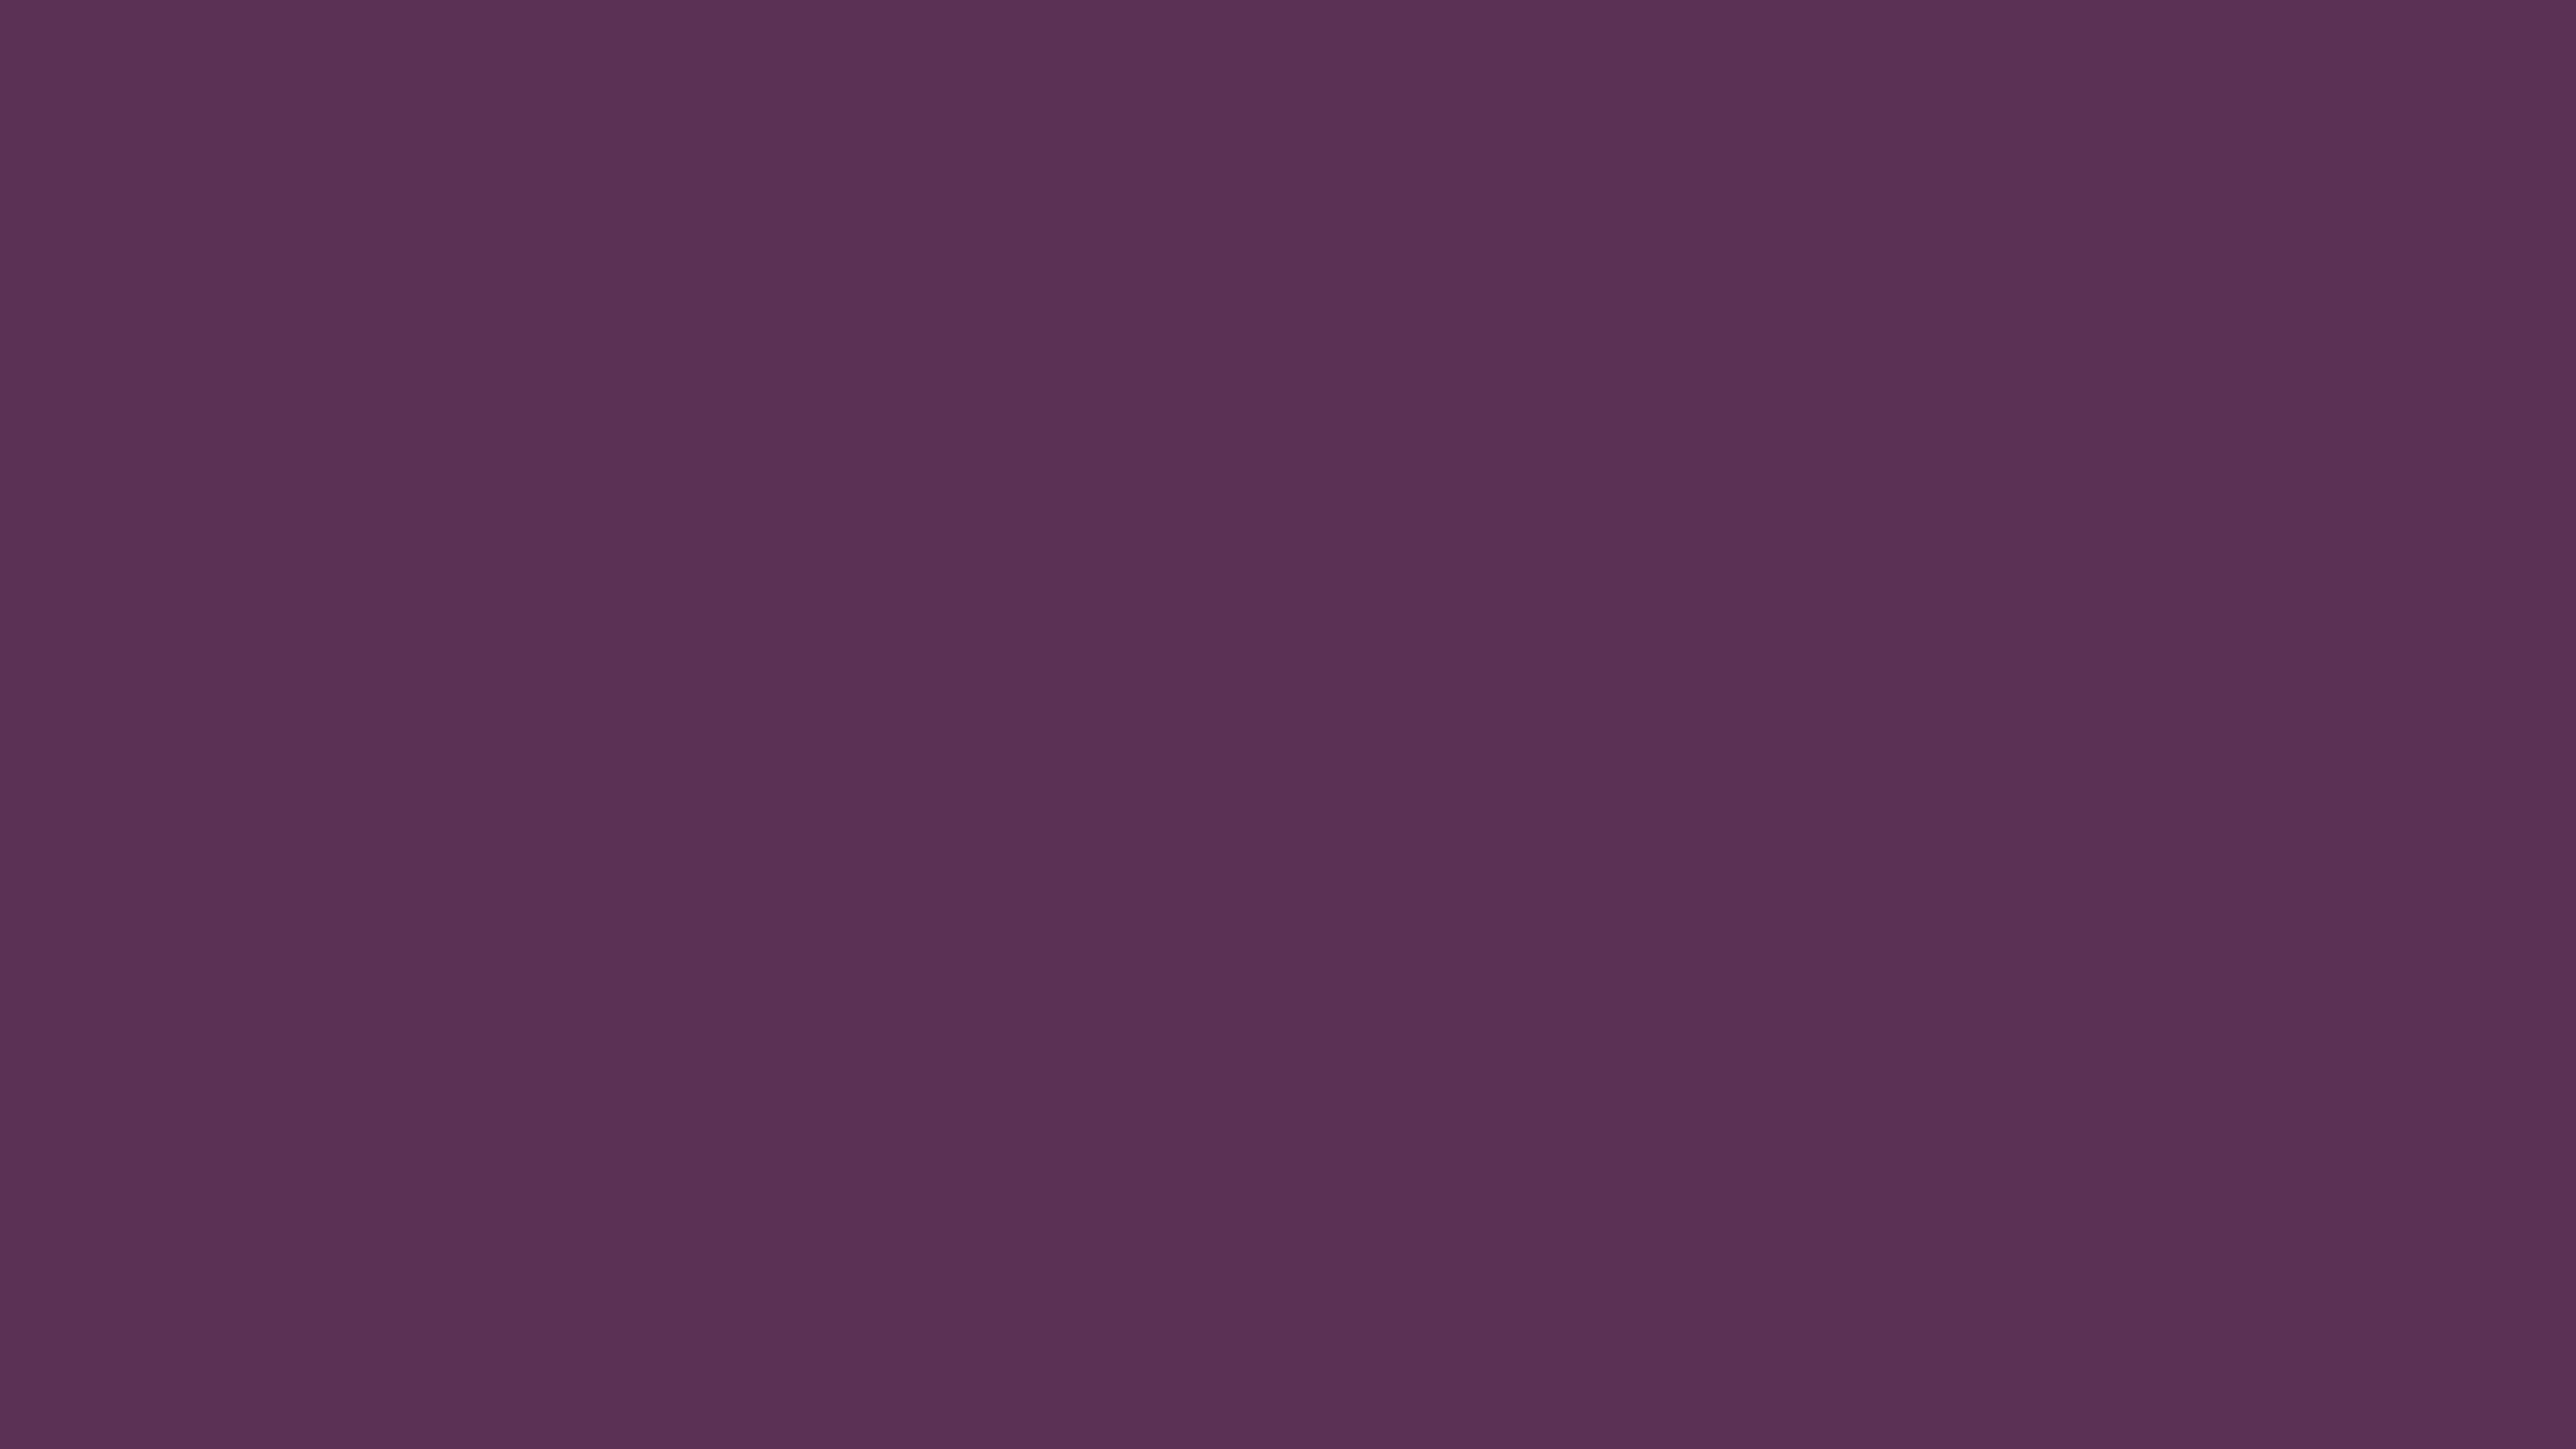 5120x2880 Japanese Violet Solid Color Background